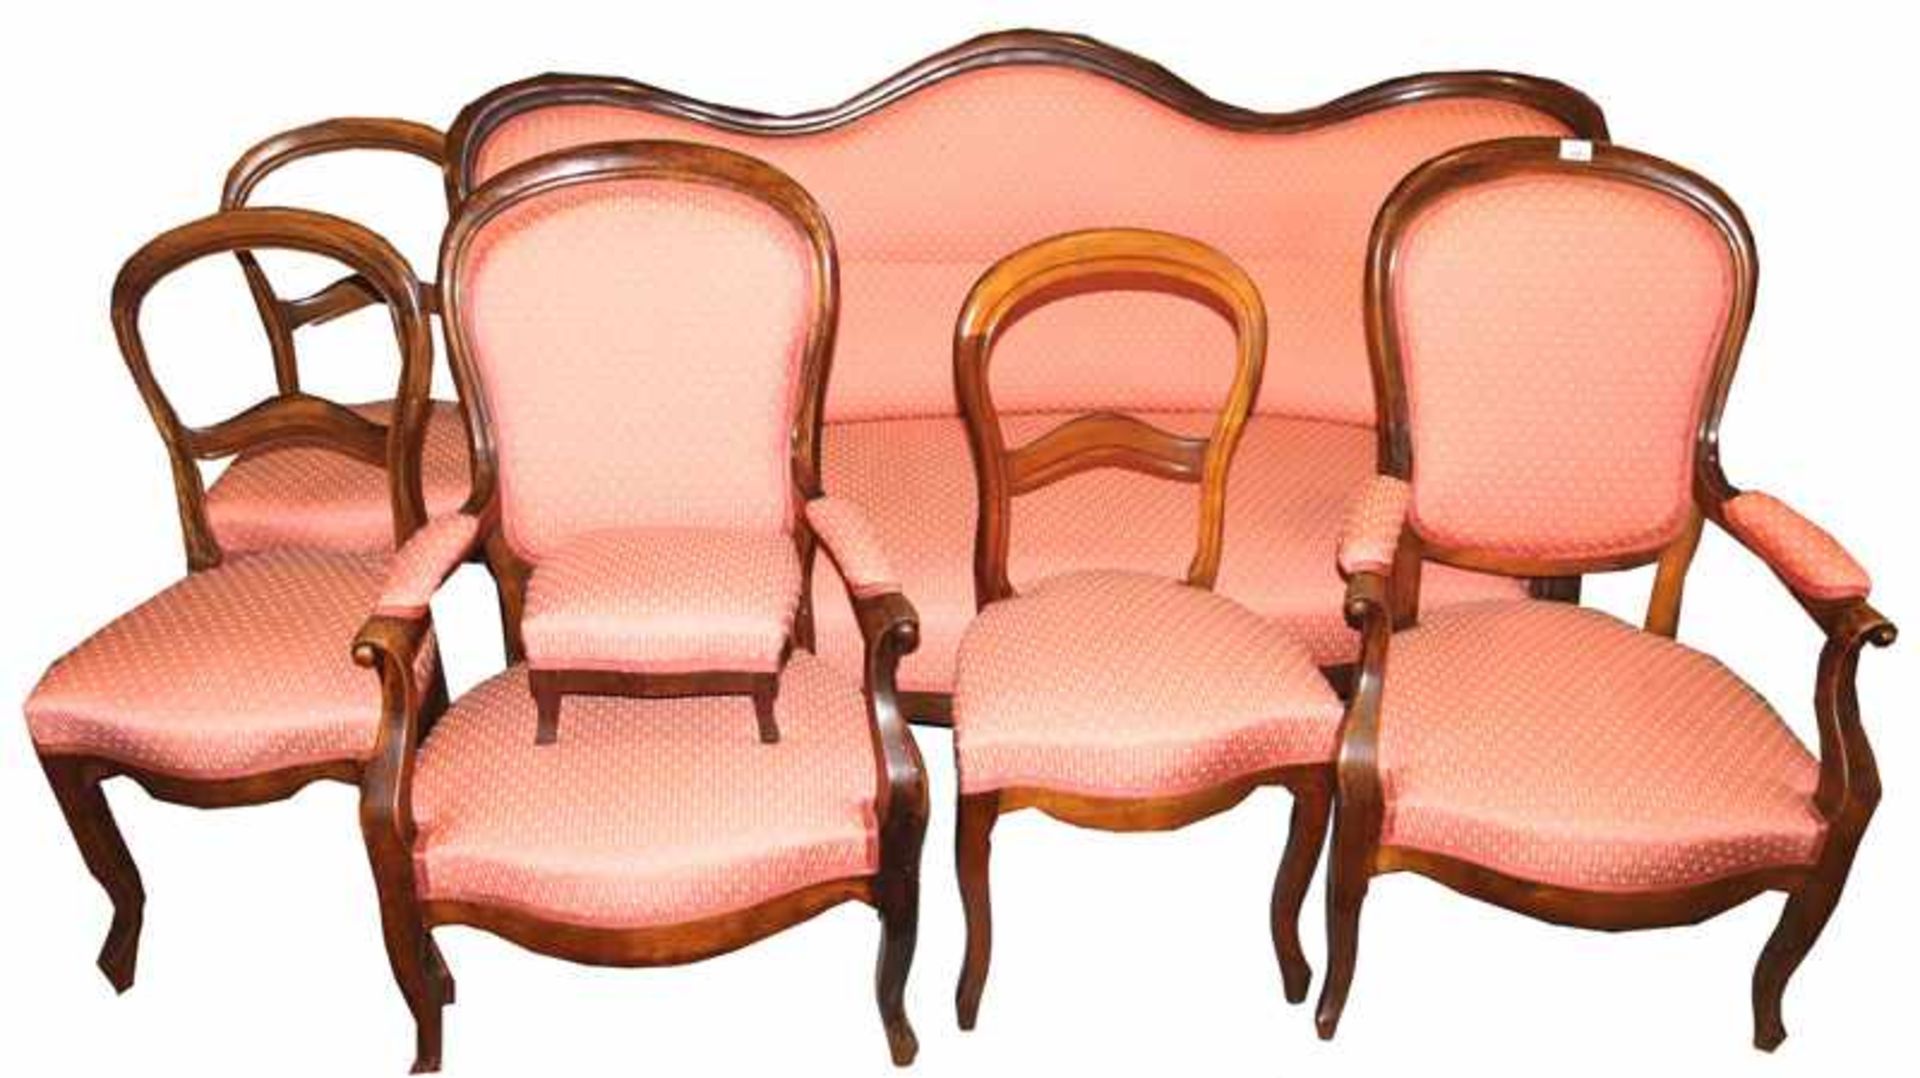 Sitzgarnitur, Holzrahmen, gepolstert und rot/beige bezogen: Sofa, H 95 cm, B 172 cm, T 60 cm, 2